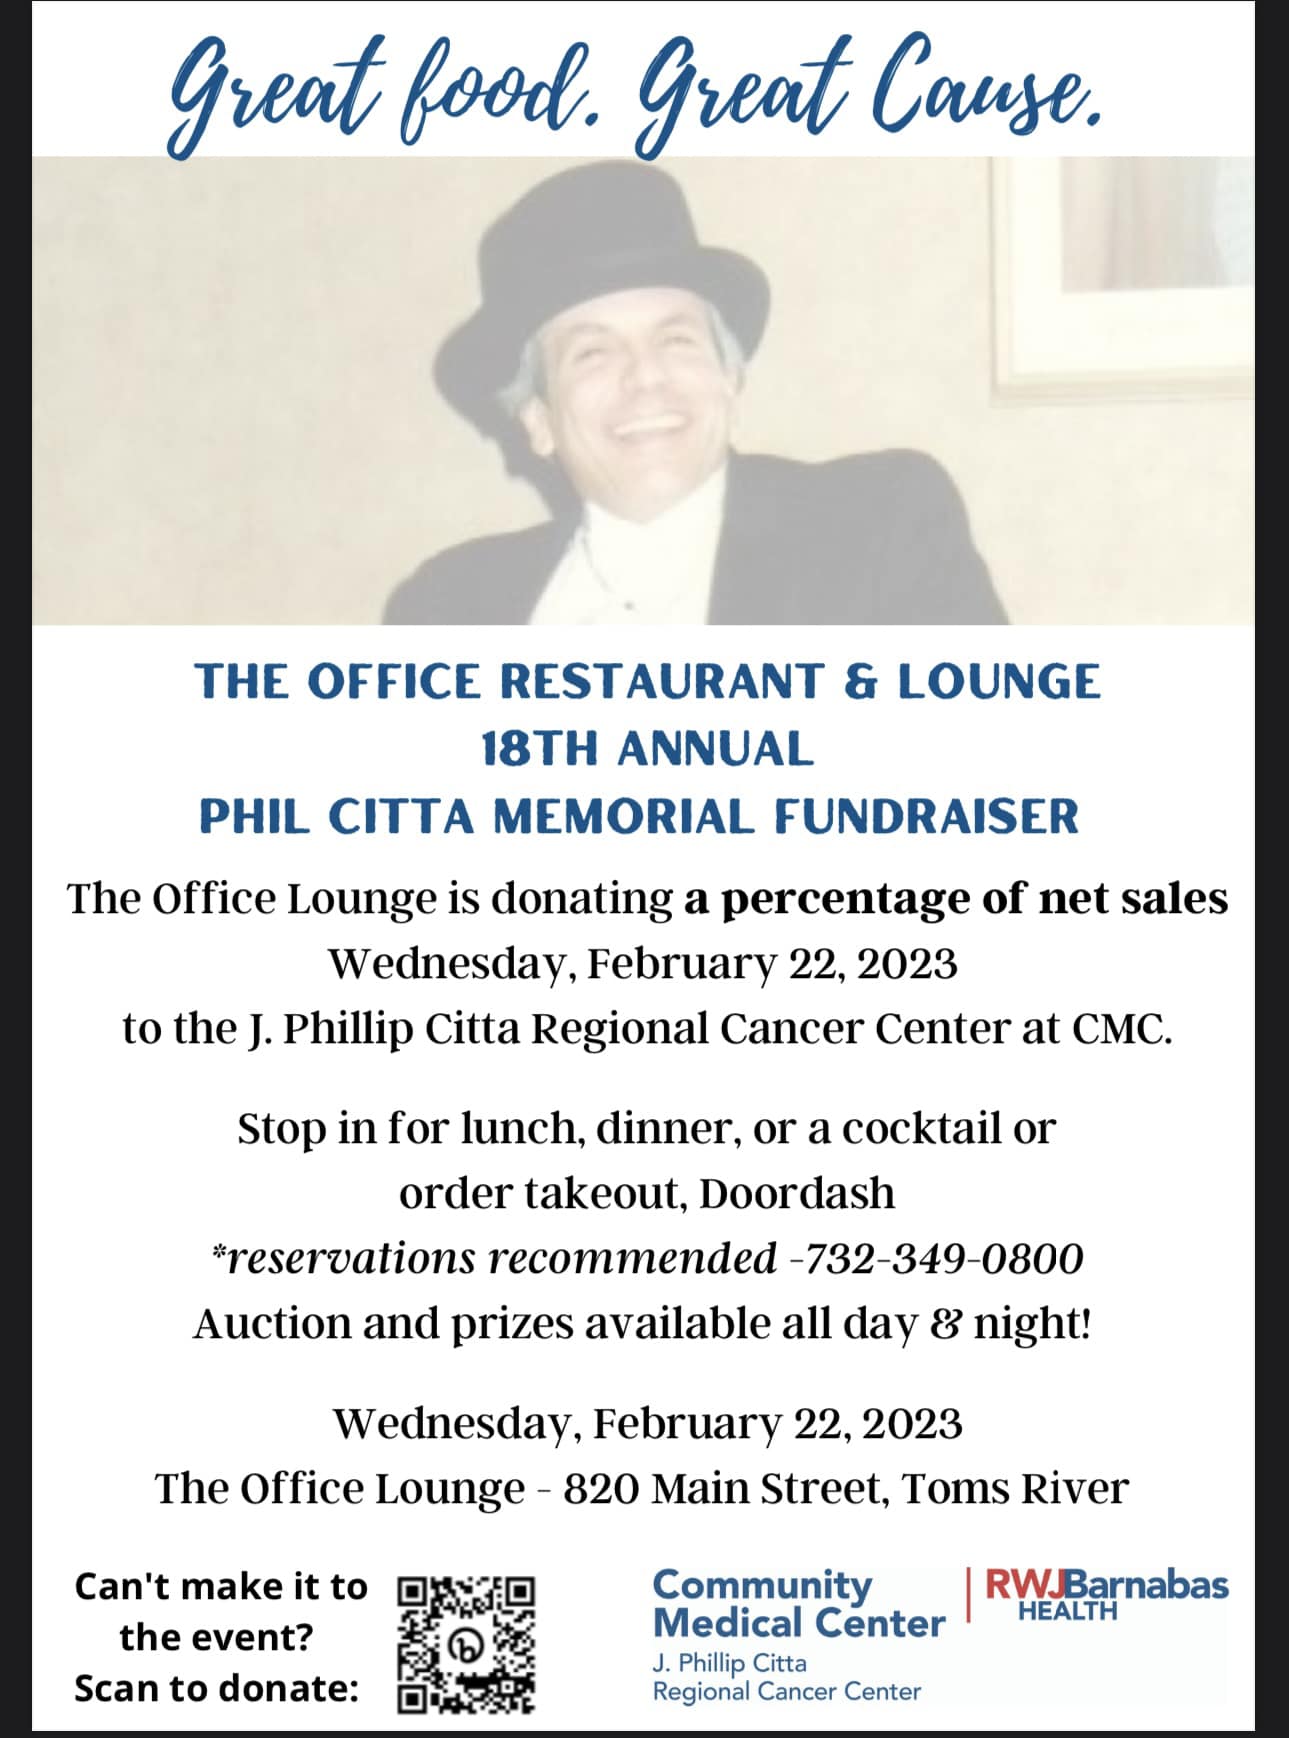 Phil Citta Memorial